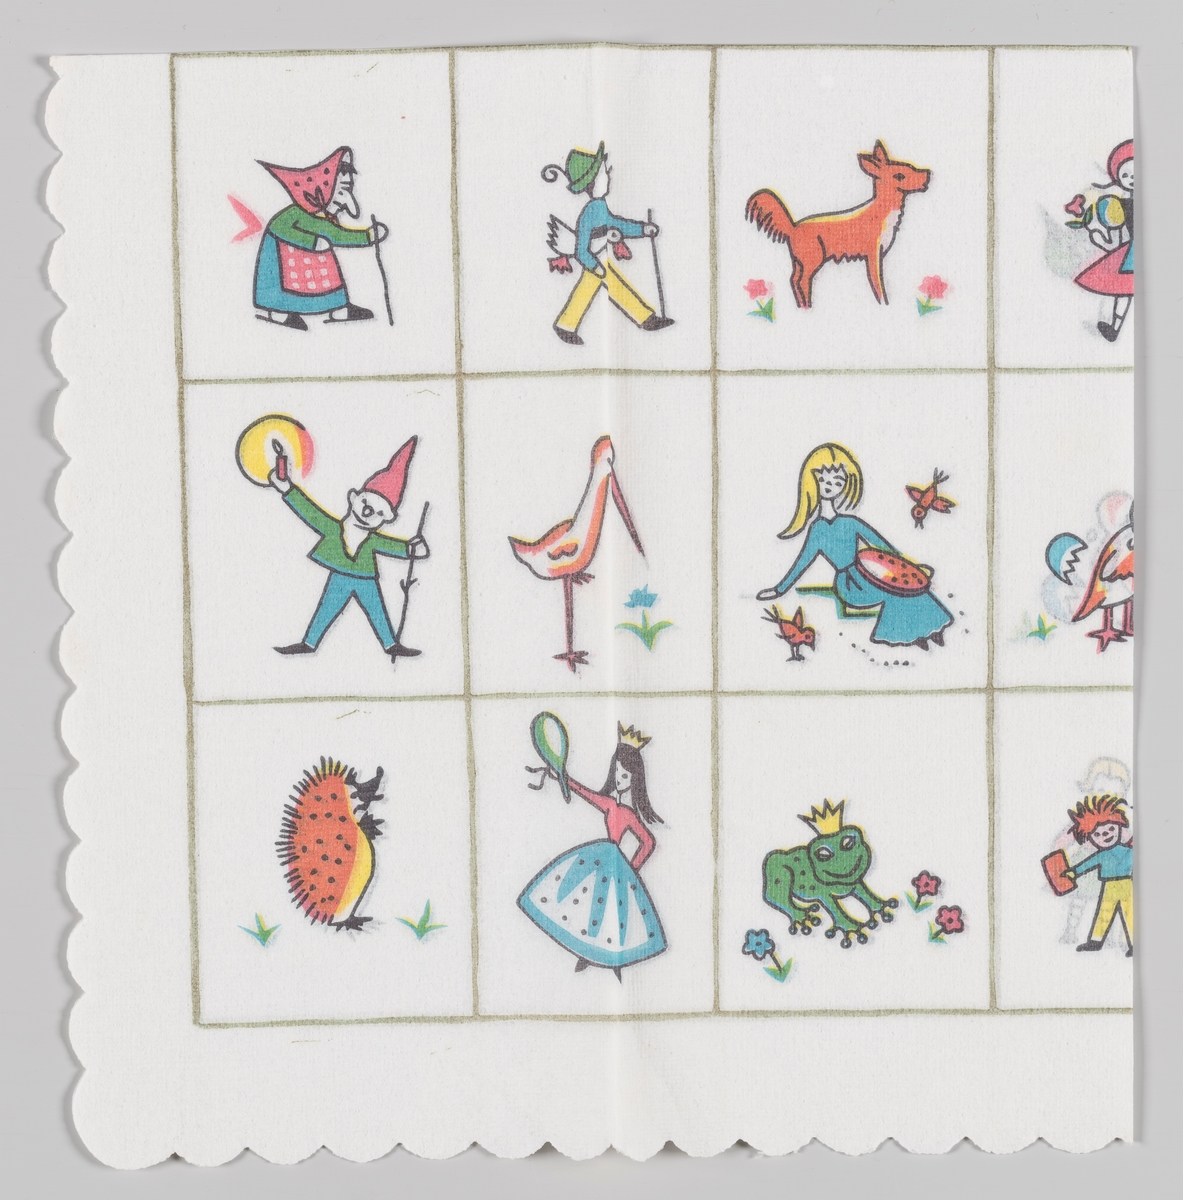 Firkanter med forskjellige figurer: En heks, en gutt med en gås under armen, en rev, en nisse, en stork, en jente som forer fuglene, et pinnsvin, en prinsesse, en frosk med krone.